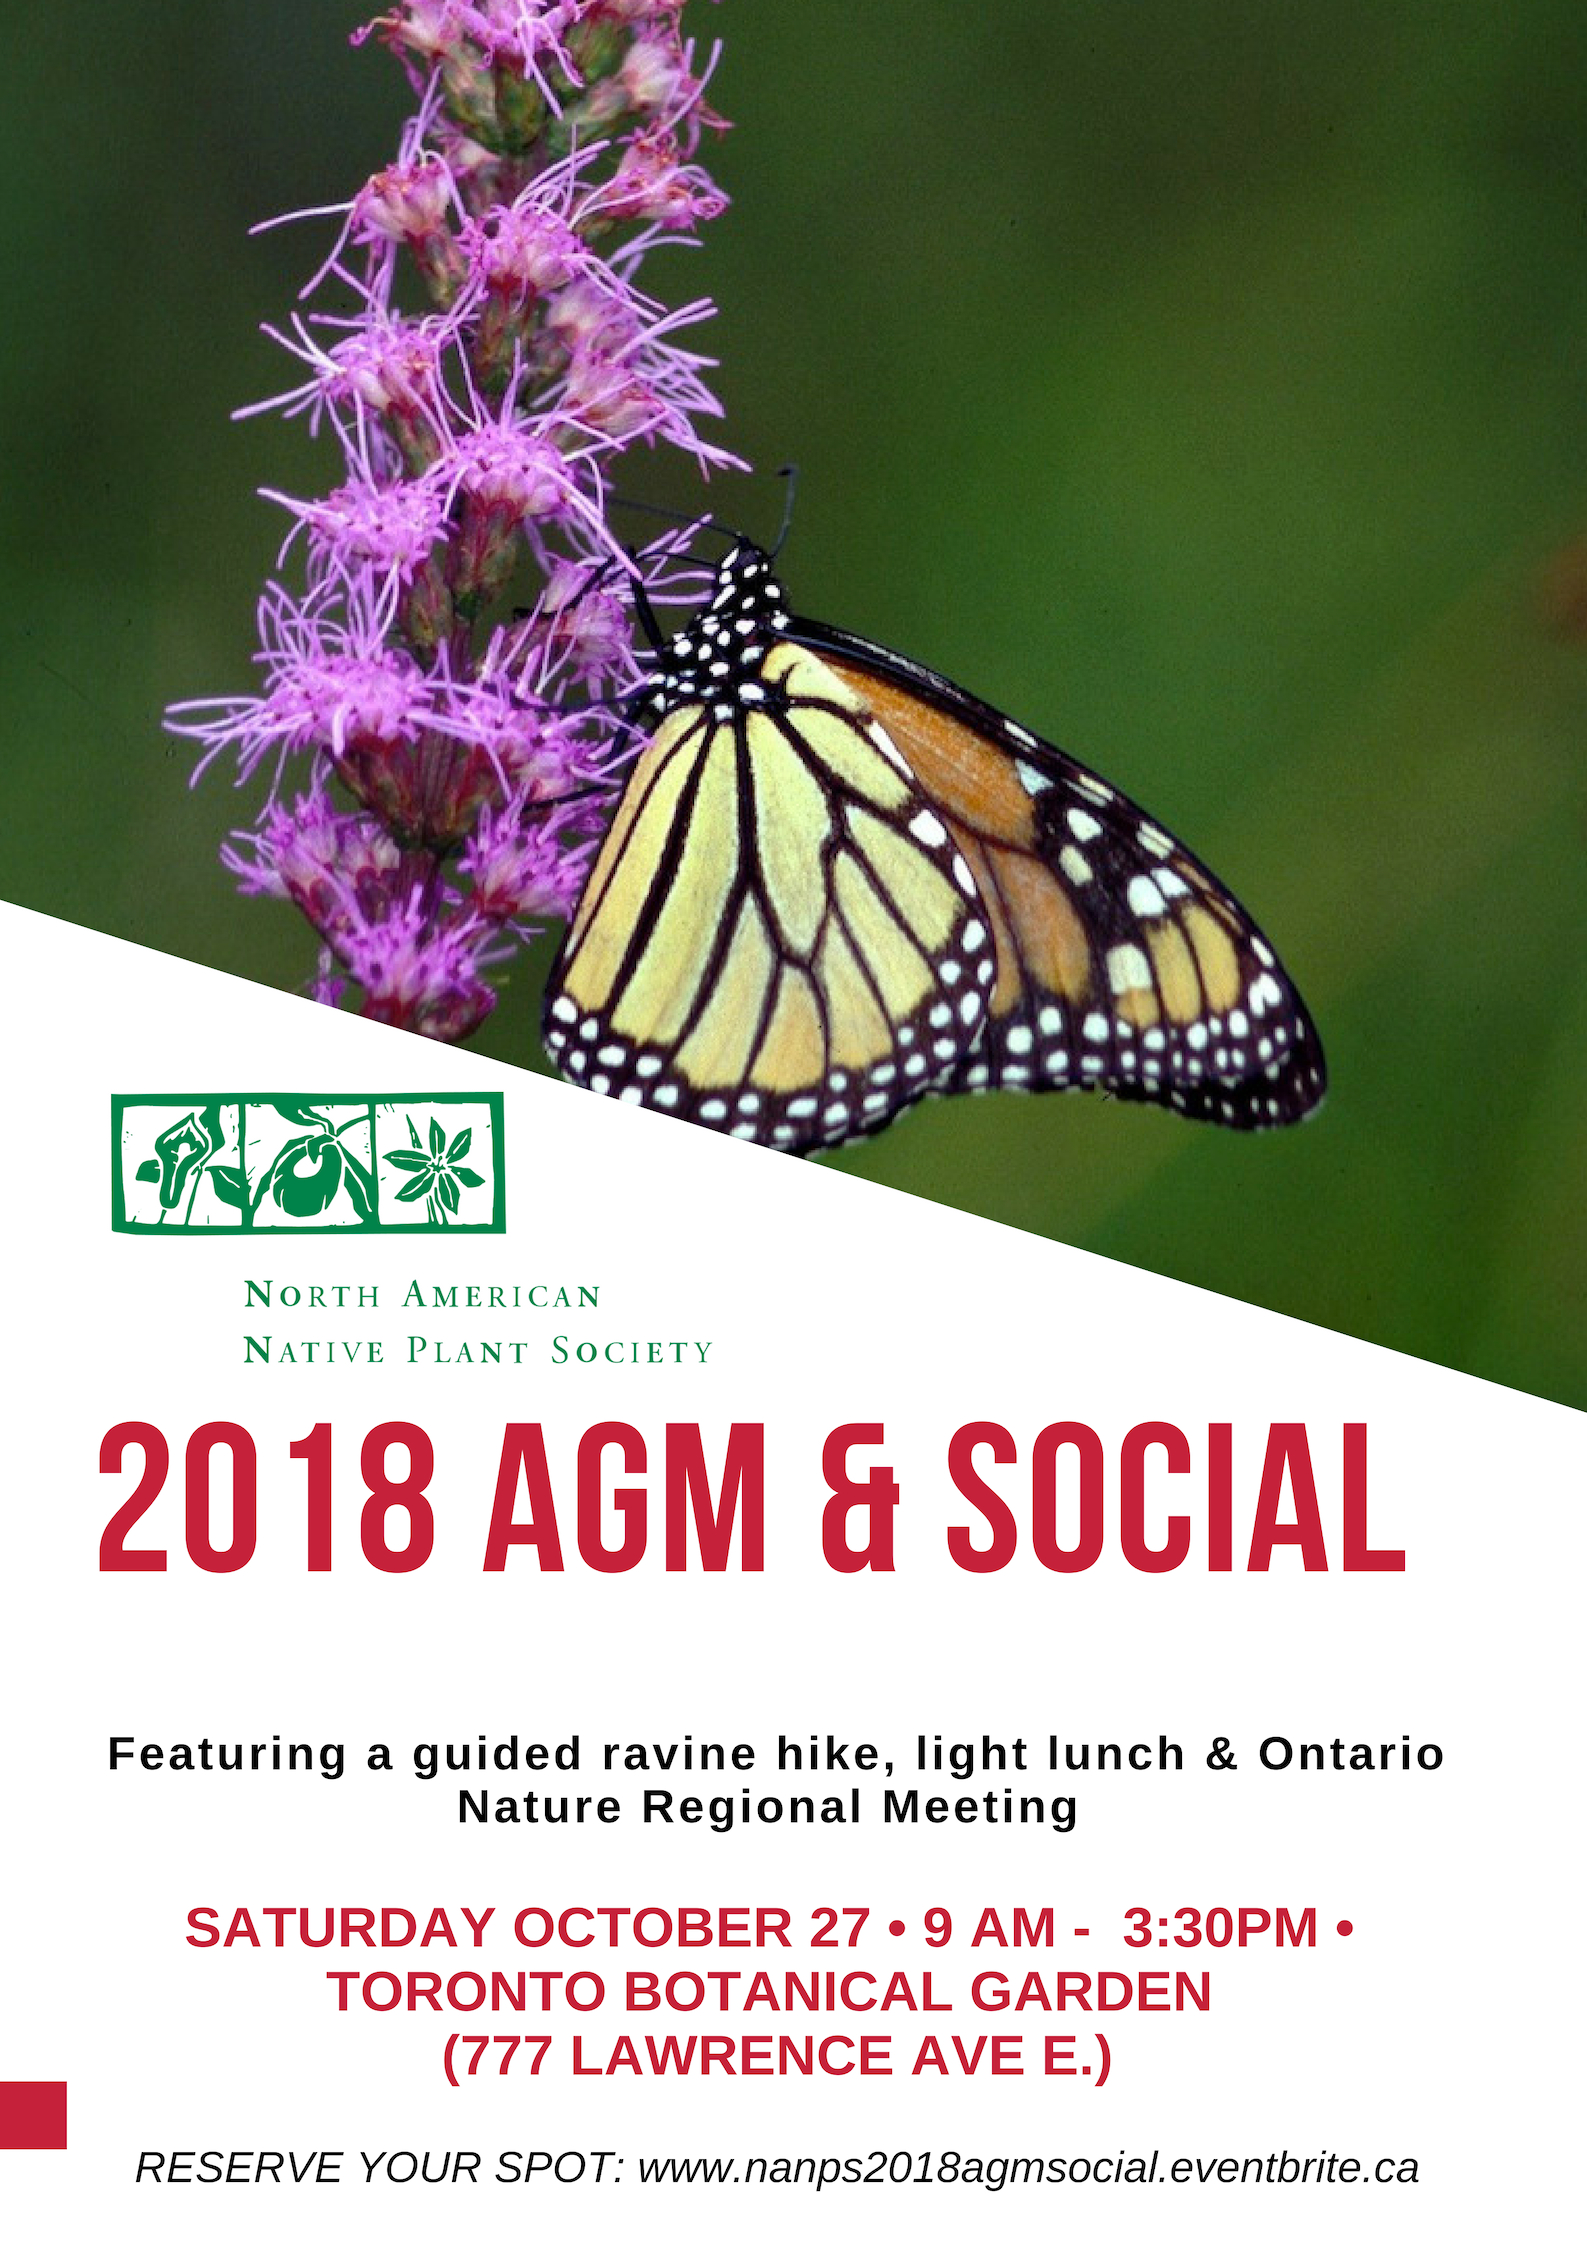 The 2018 NANPS AGM & Social